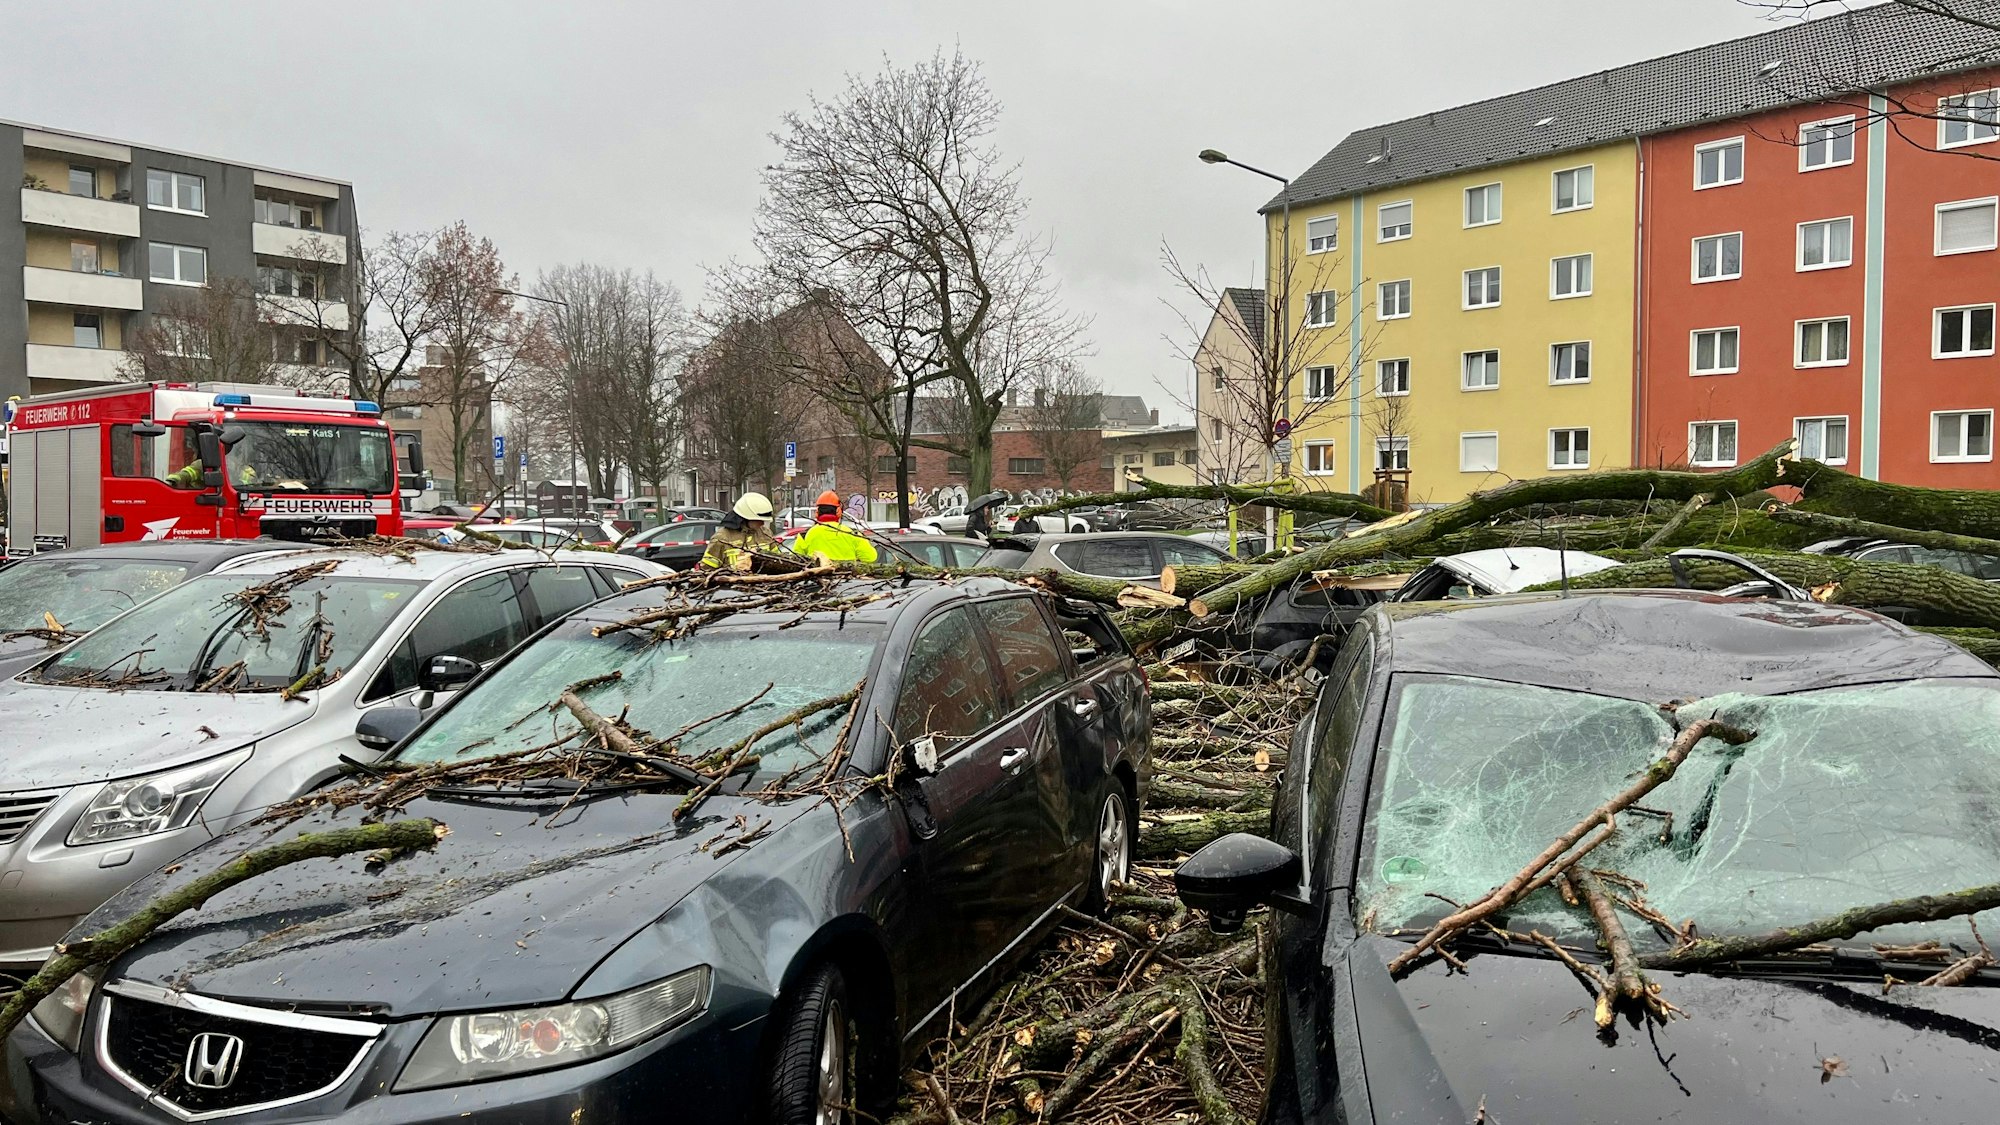 Ìn Zollstock sind zahlreiche Äste von den Bäumen gestürzt und haben mehrere Autos beschädigt. Sturmtief Zoltan hatte am 21. Dezember 2023 Köln getroffen.